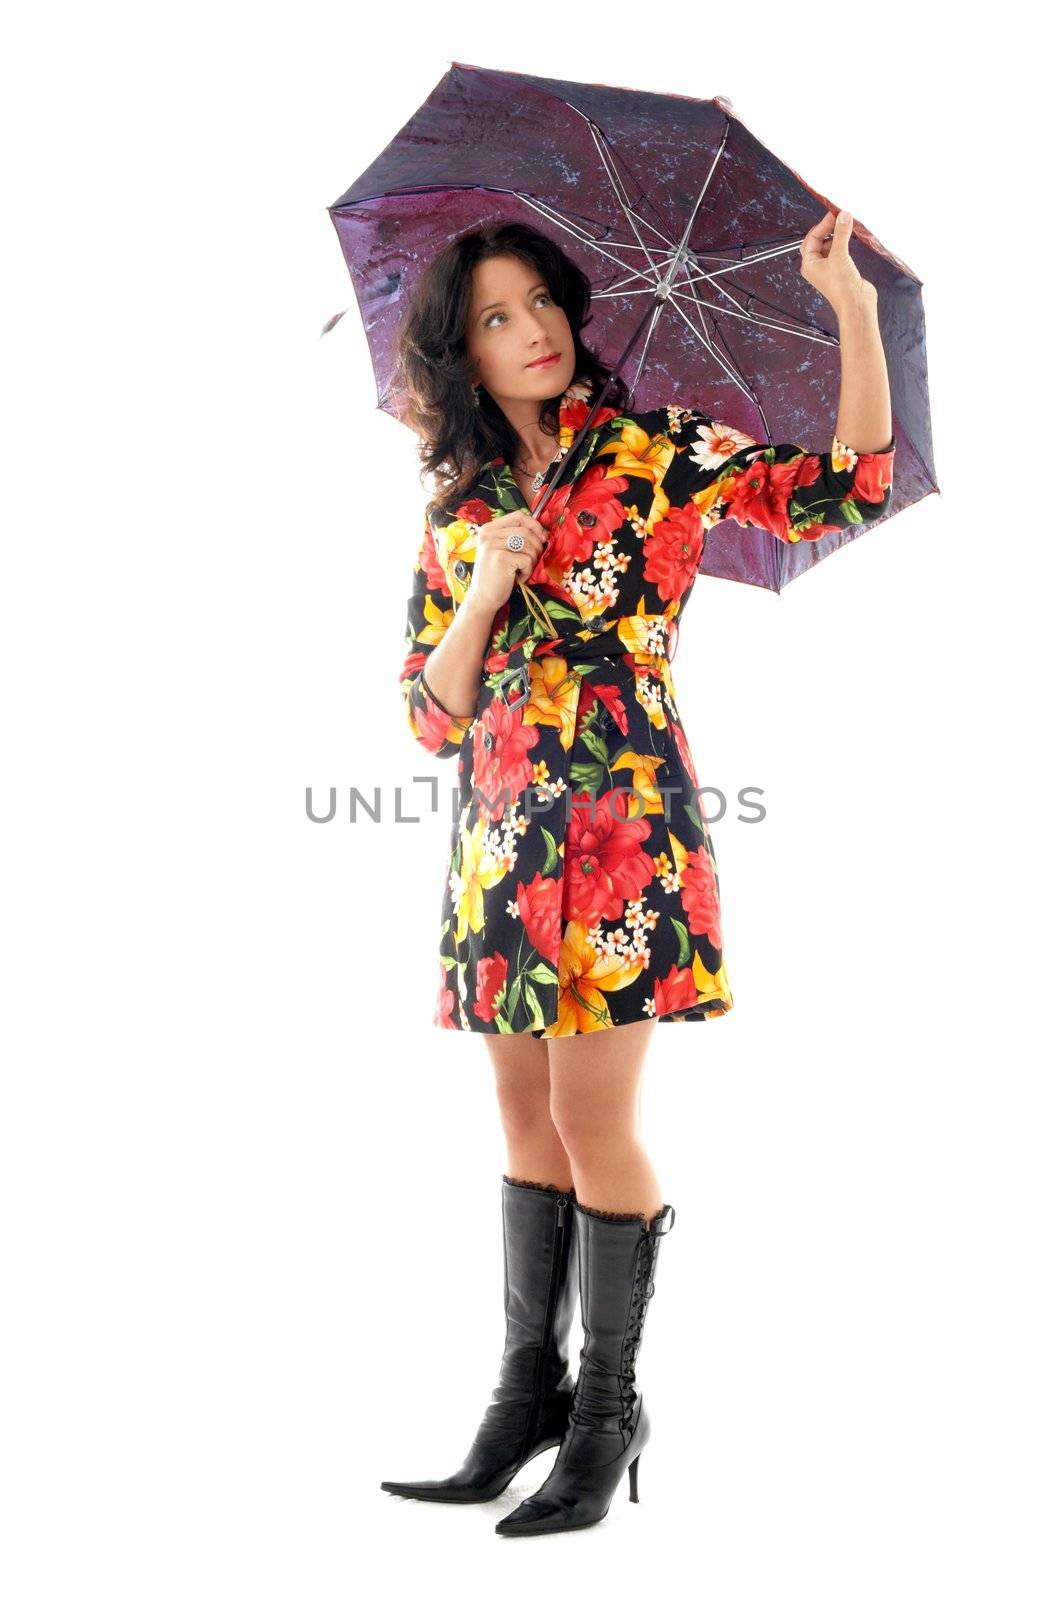 umbrella girl by dolgachov